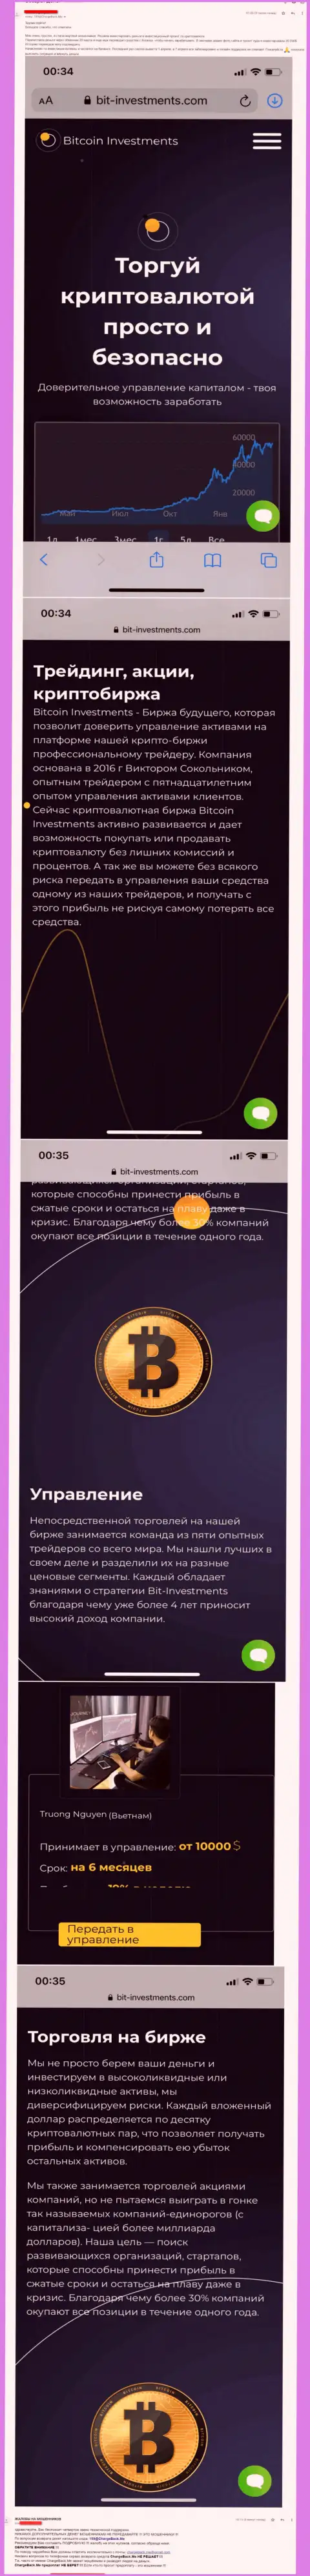 Бегите от конторы Bitcoin Limited подальше, украдут денежные вложения !!! (рассуждение)